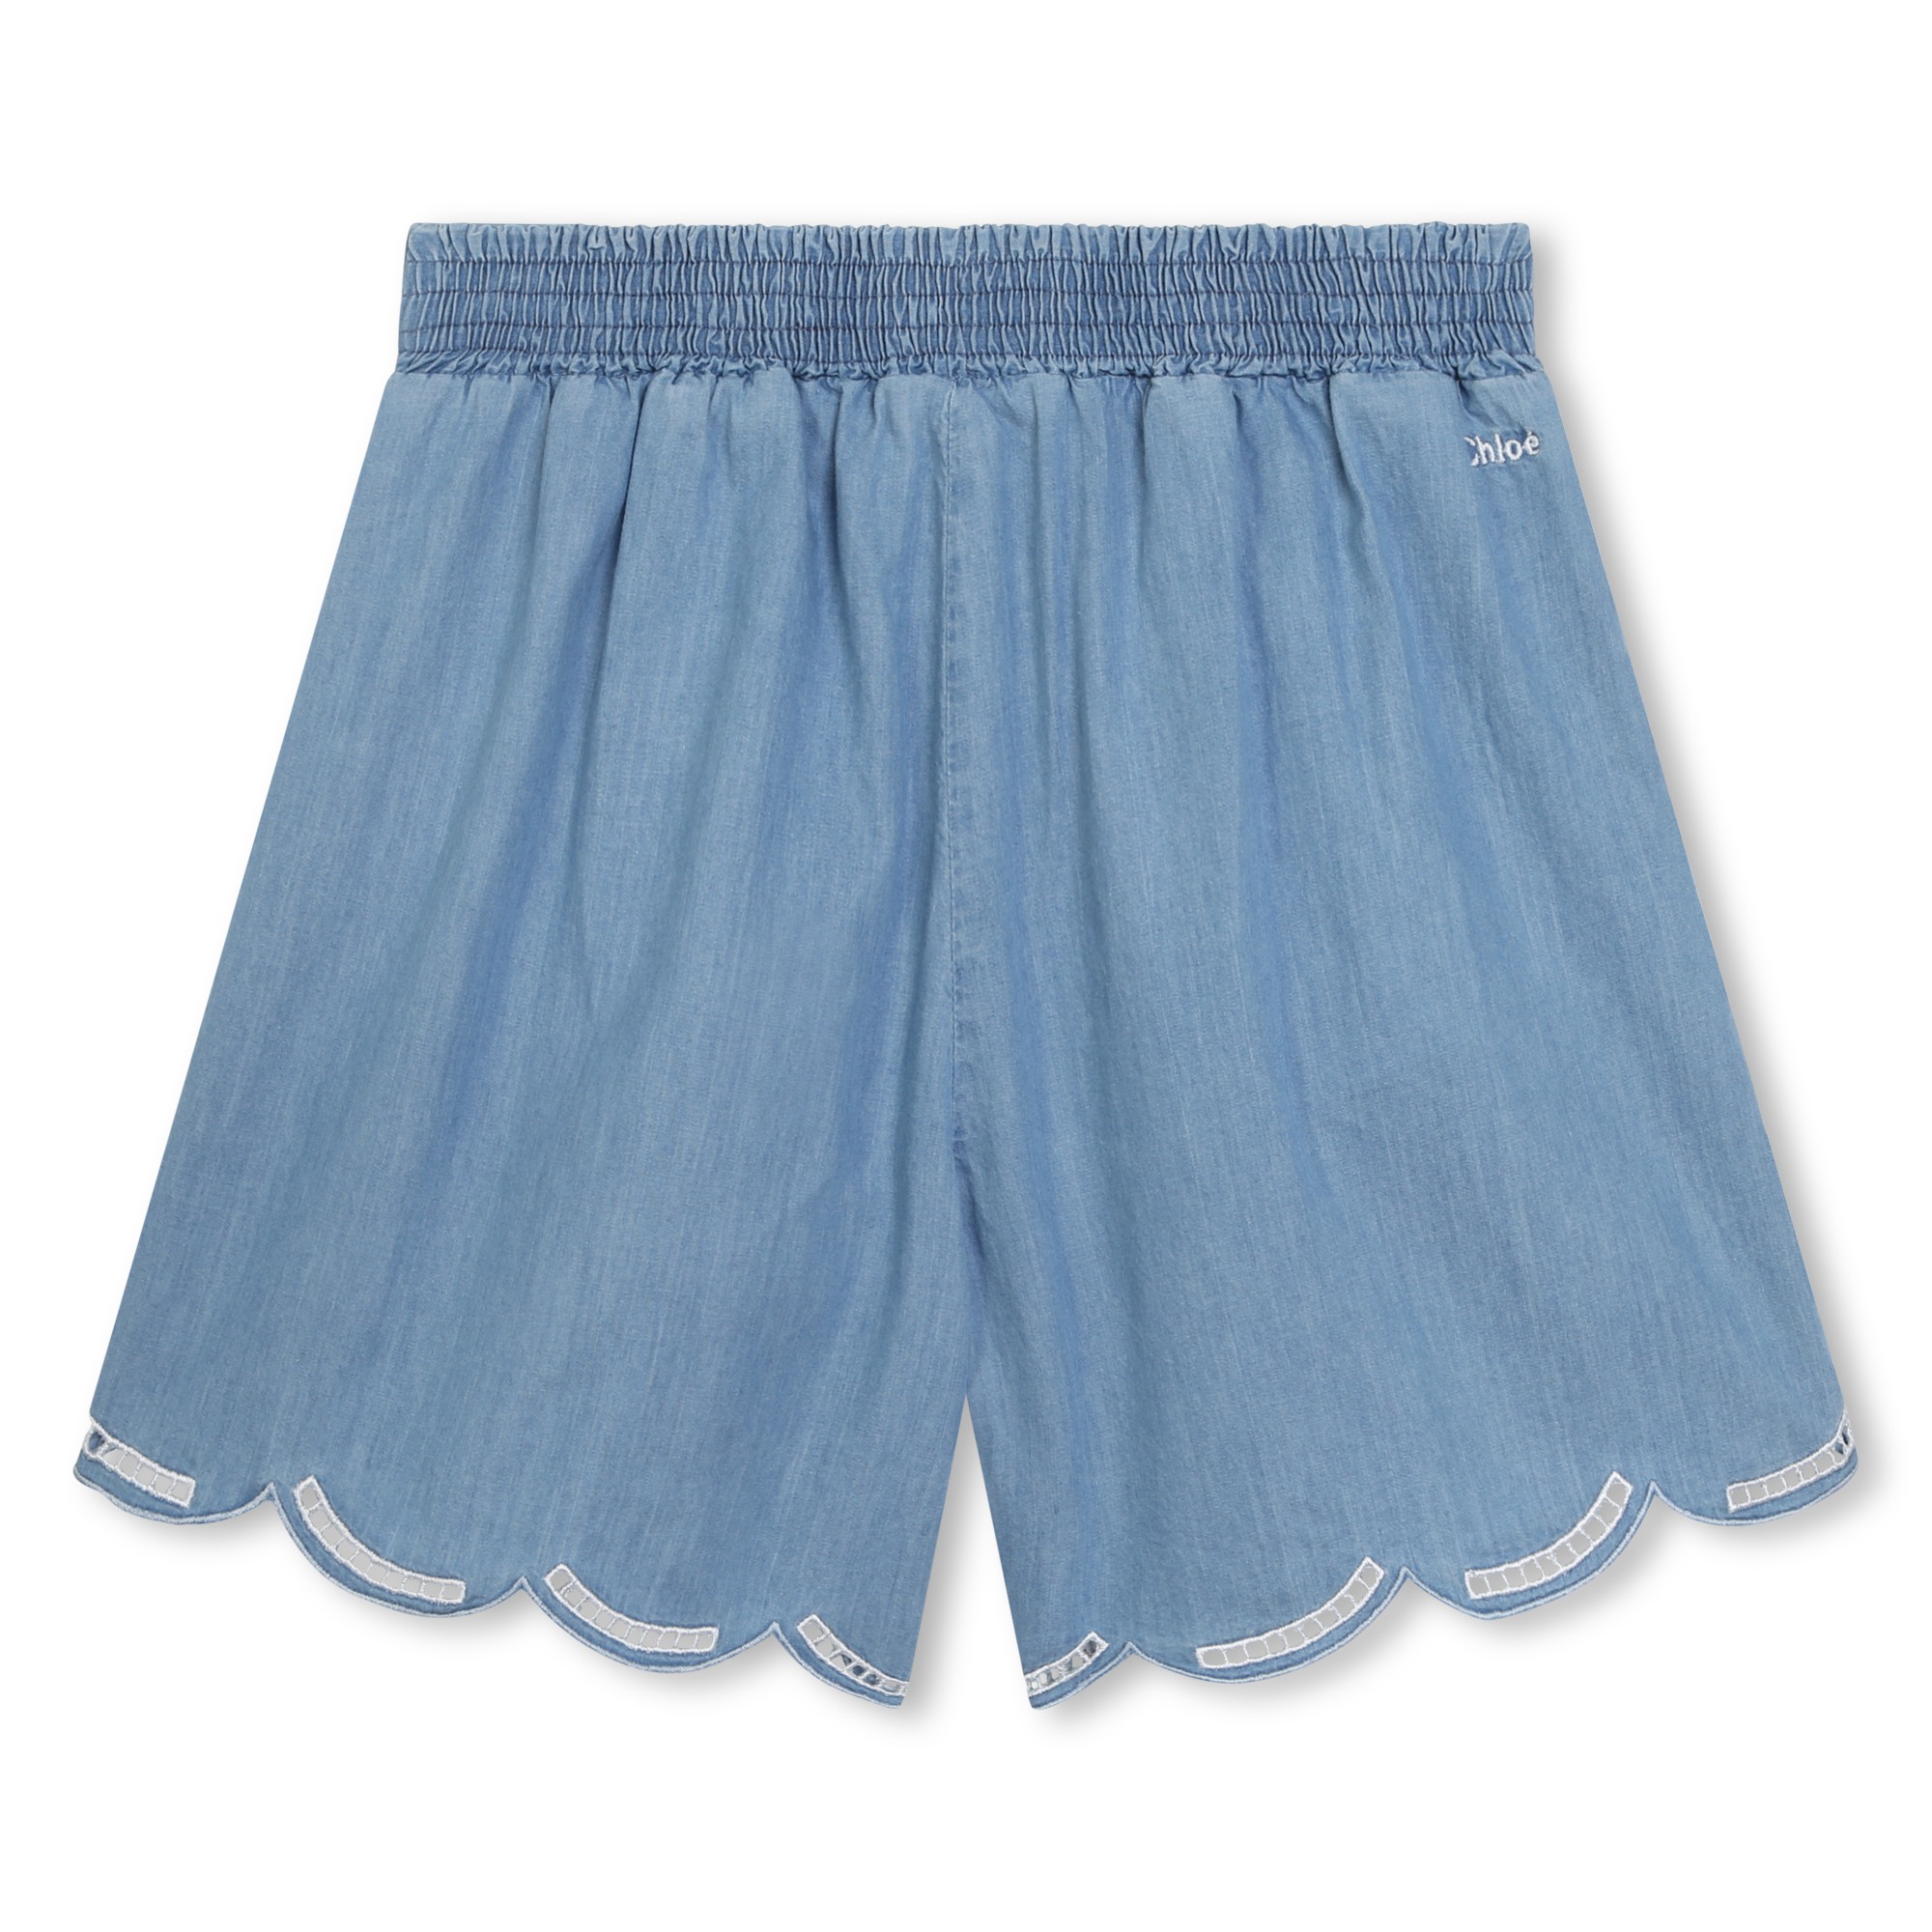 Bestickte Jeans-Shorts CHLOE Für MÄDCHEN